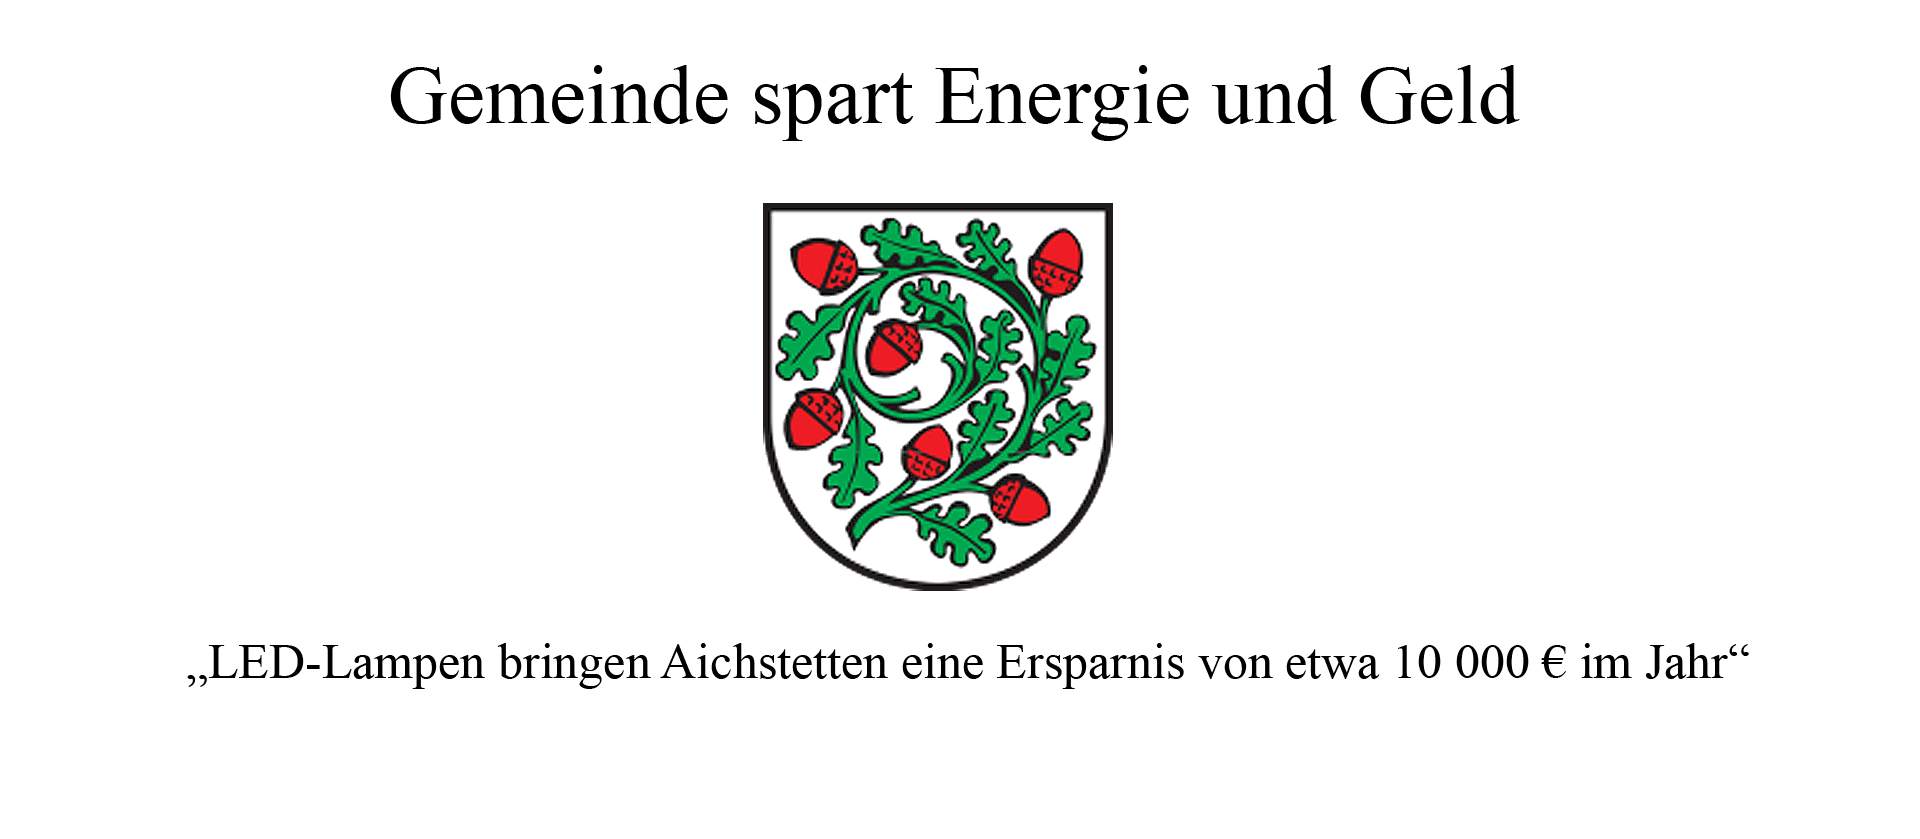 Gemeinde Aichstetten spart Energie und Geld